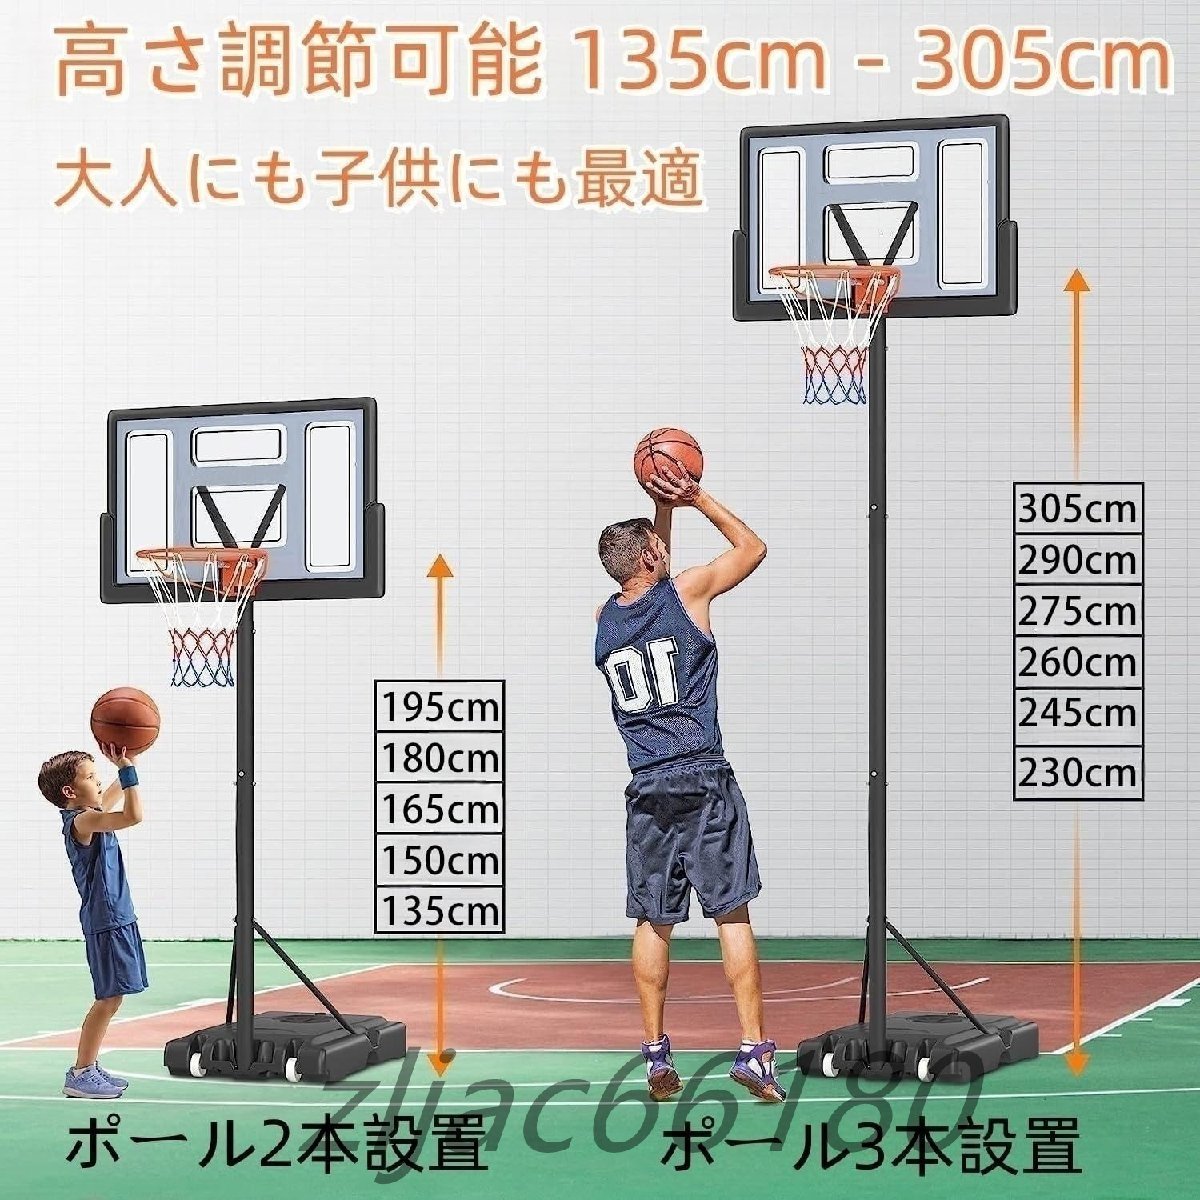 バスケットゴール 高度 305cm 7号球対応 屋外 室内 バスケットゴール 簡易 調節可能 移動式 練習用 バスケットボール 自立式 工具付きの画像2